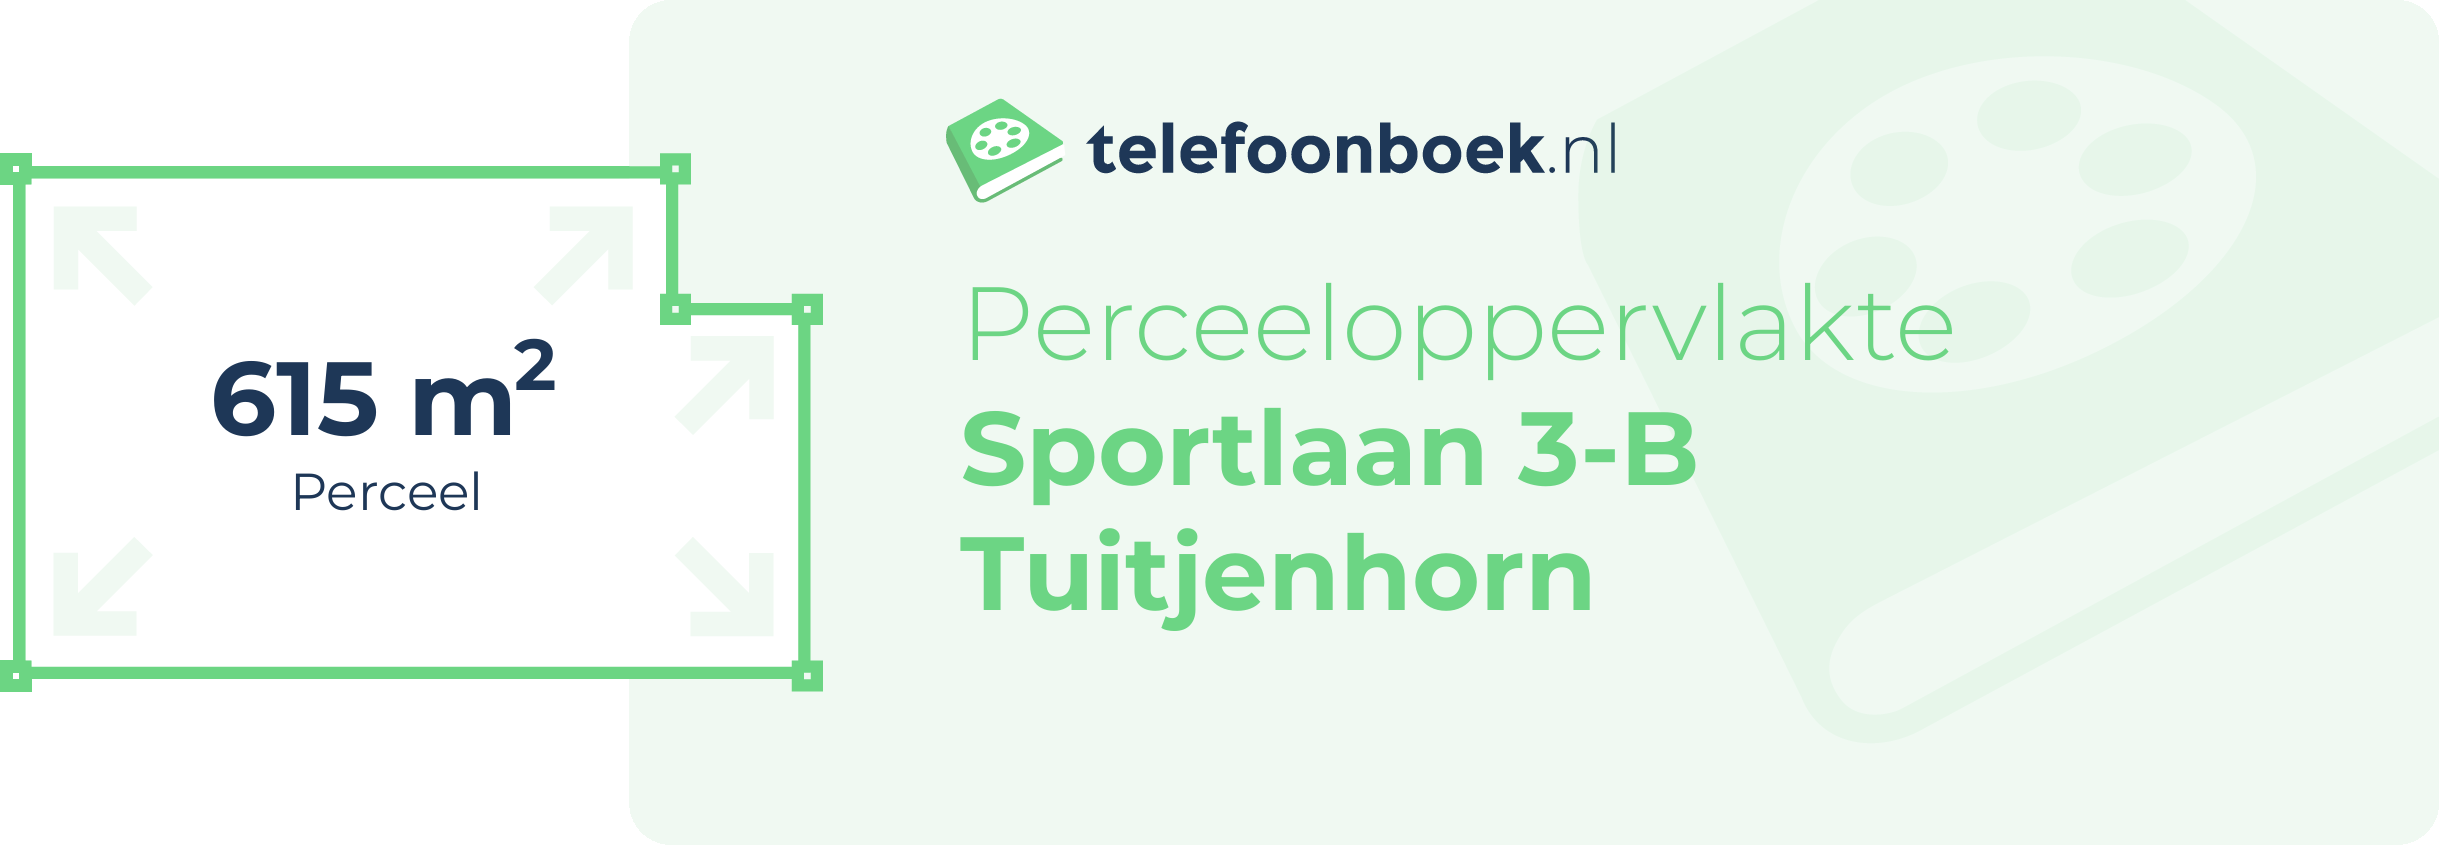 Perceeloppervlakte Sportlaan 3-B Tuitjenhorn